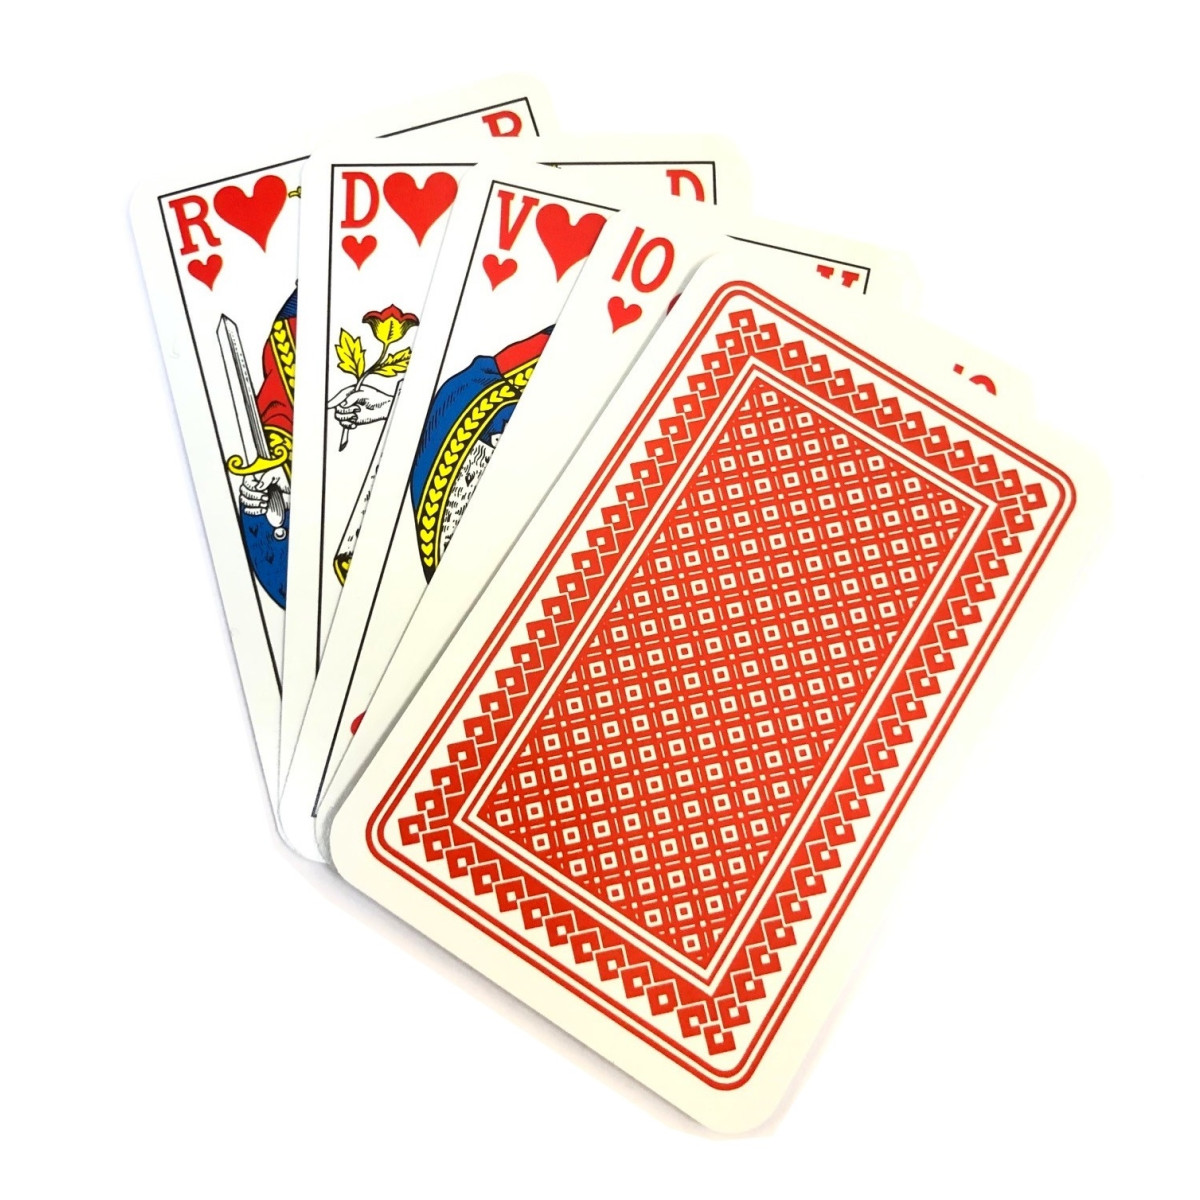 Geavanceerd langzaam Vijf Kaartspel Carlton 32 kaarten Piket - frans - rood kopen op Amusement.be